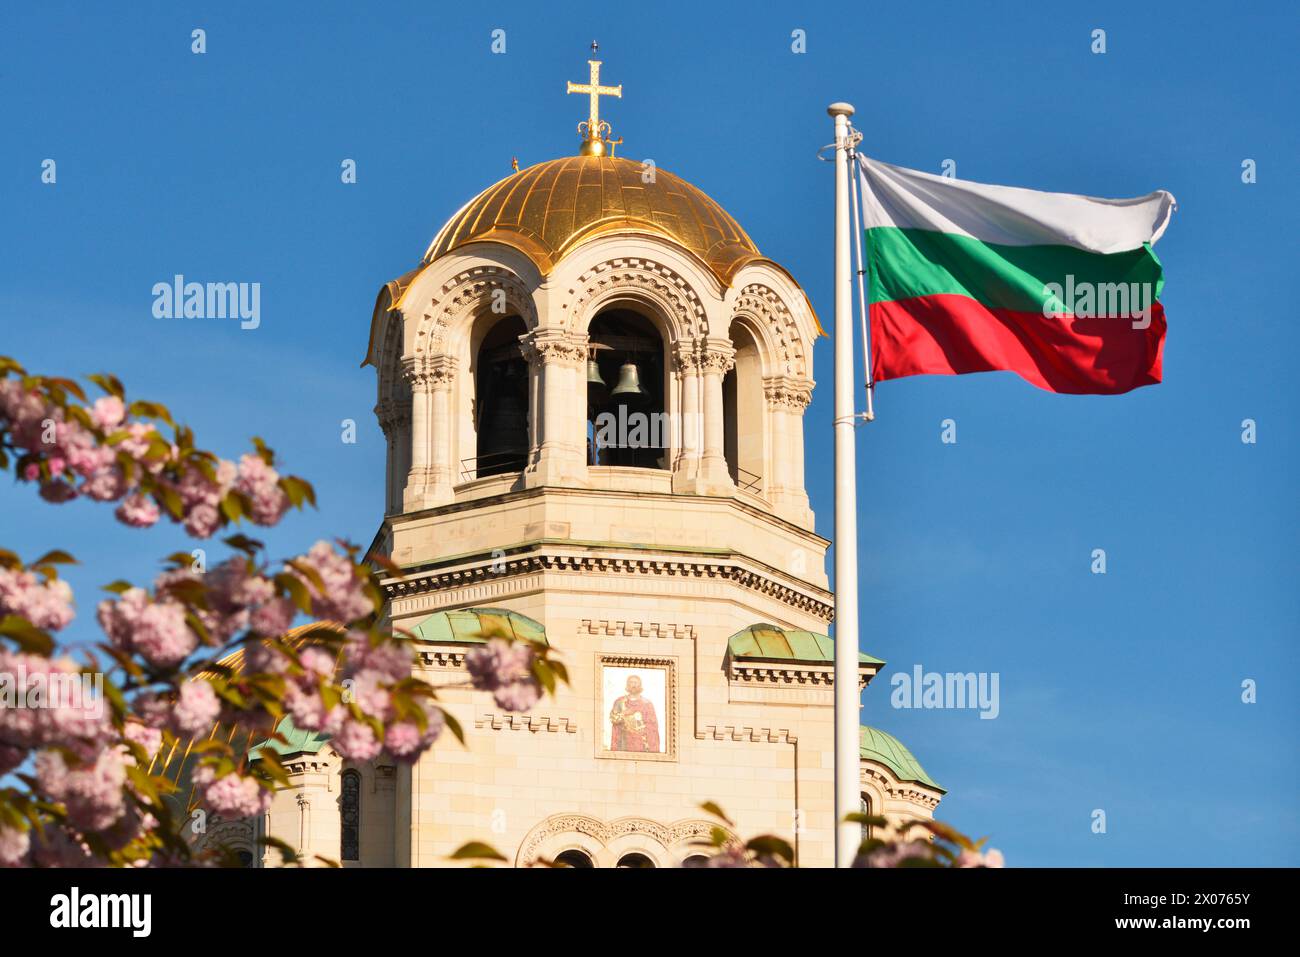 Prog Cathédrale Alexandre Nevski et drapeau national bulgare à Sofia Bulgarie, Europe de l'est, Balkans, UE Banque D'Images